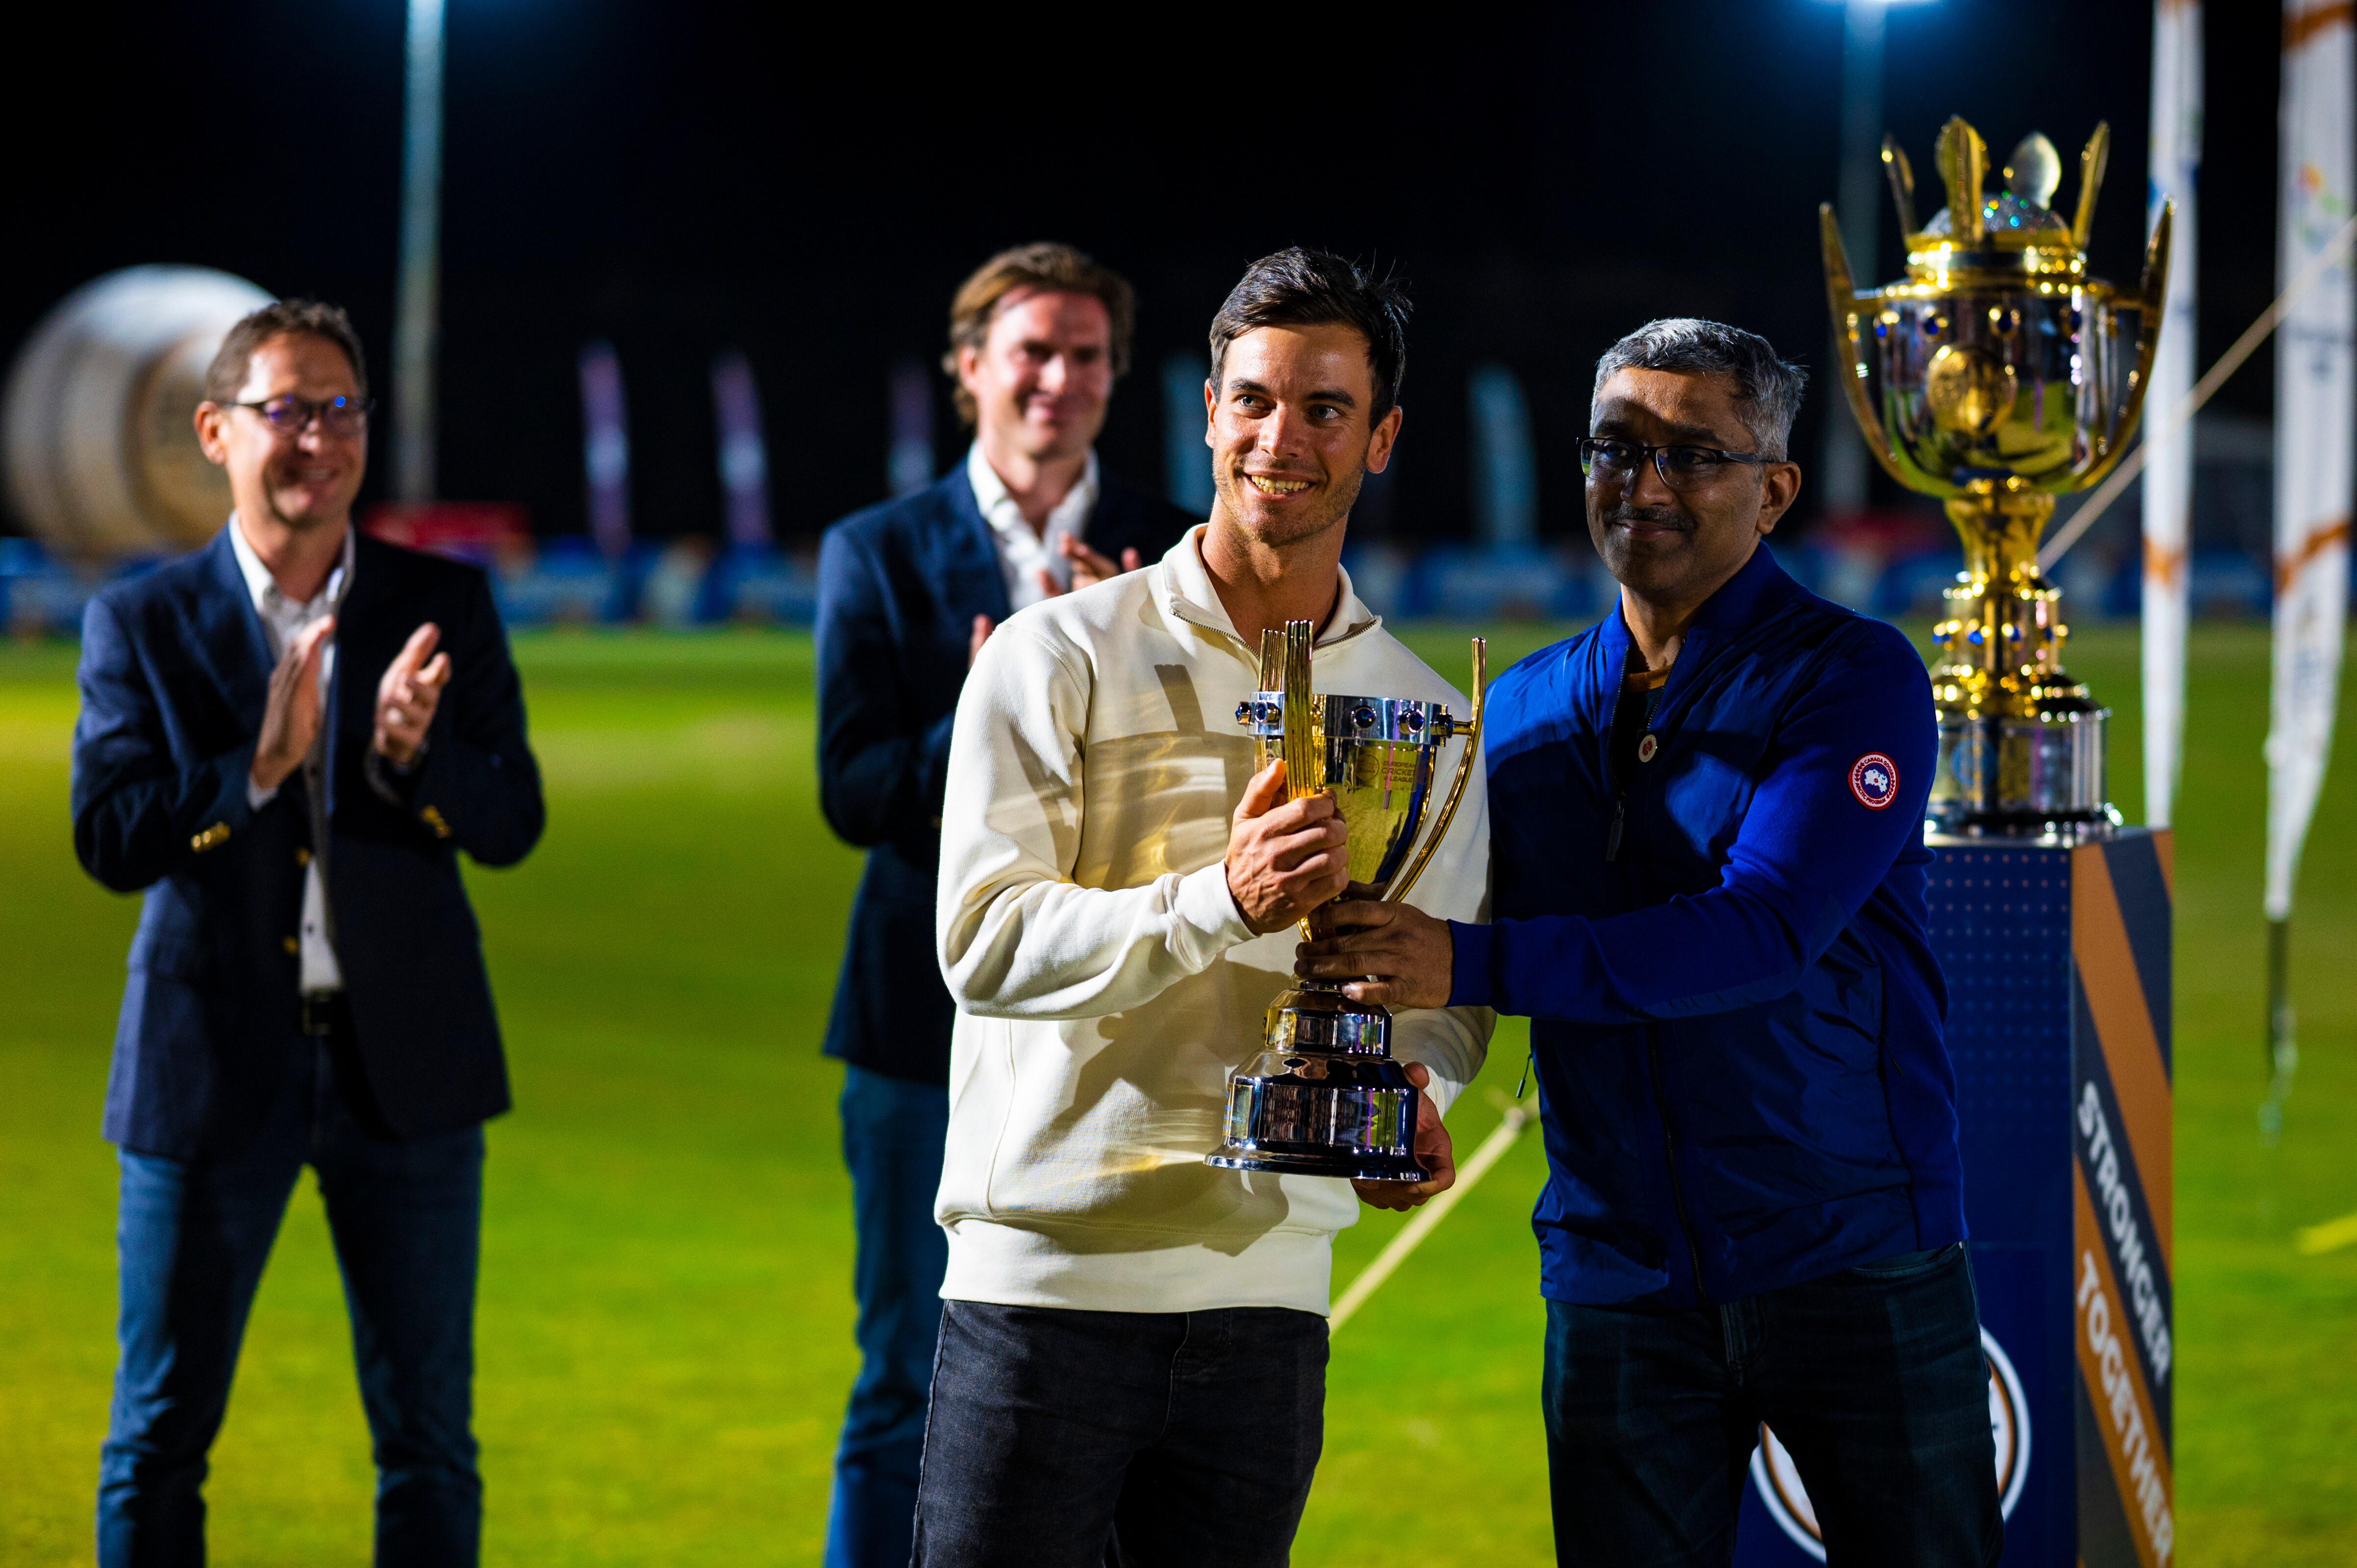 Dreux lift European Cricket League champions trophy, in pictures